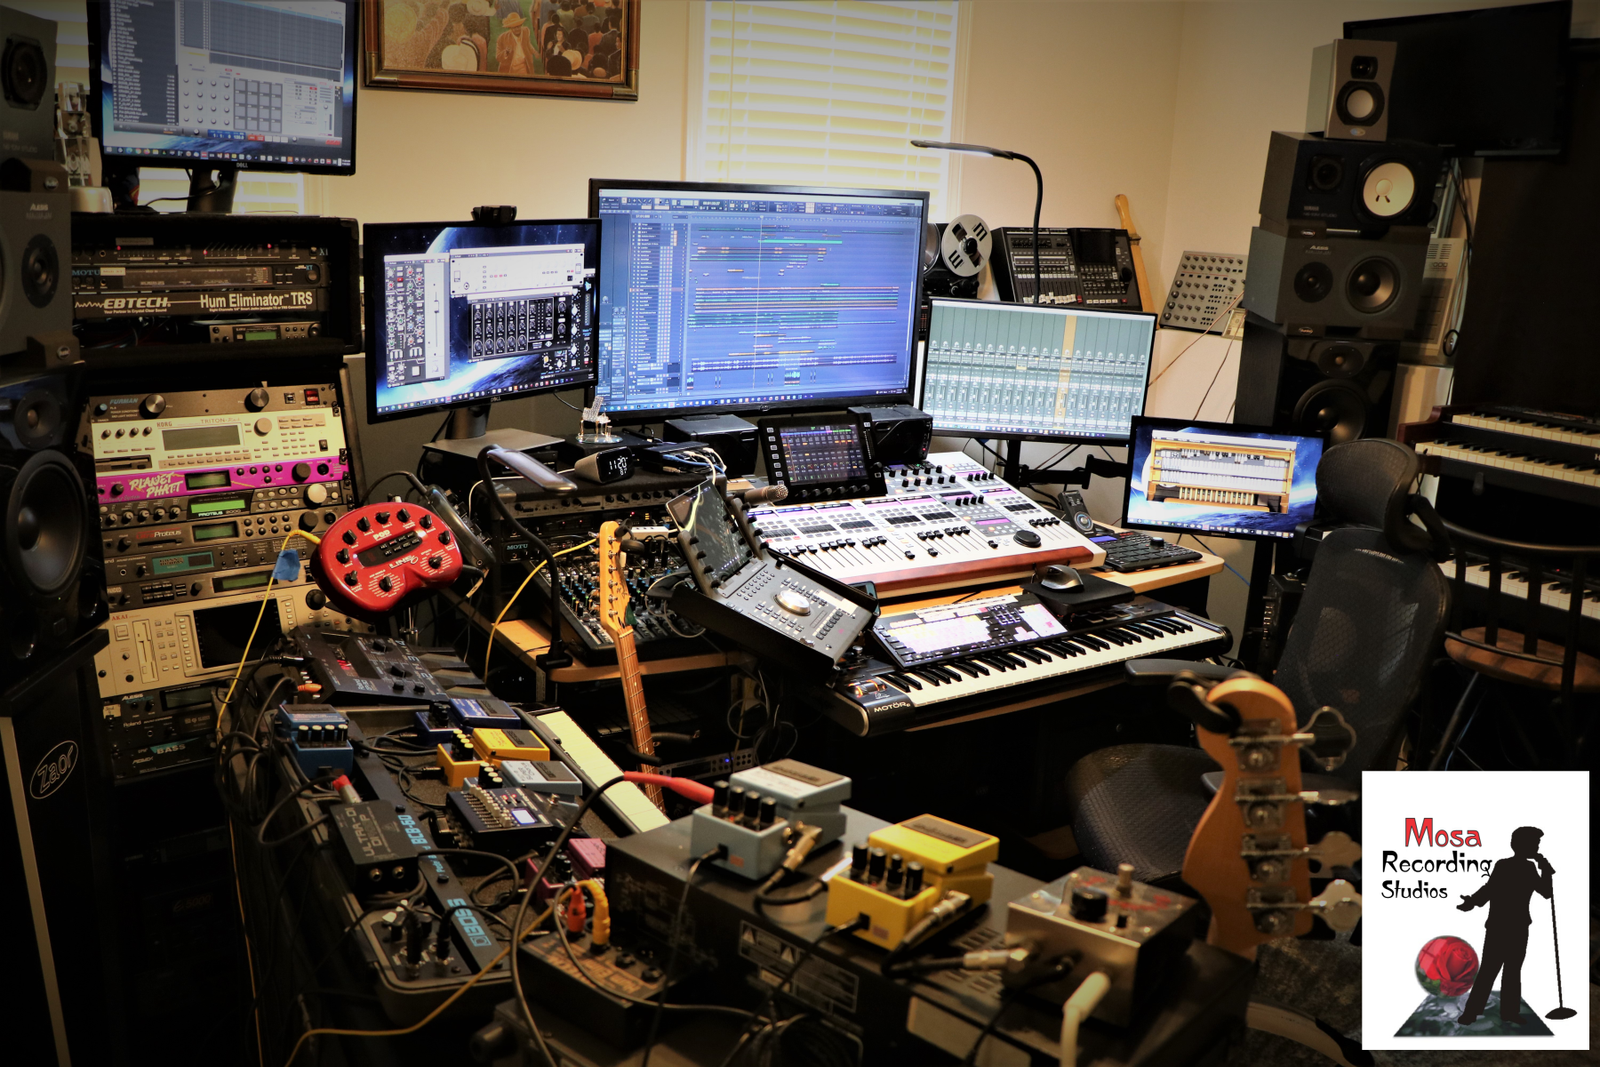 Mosa Recording Studios